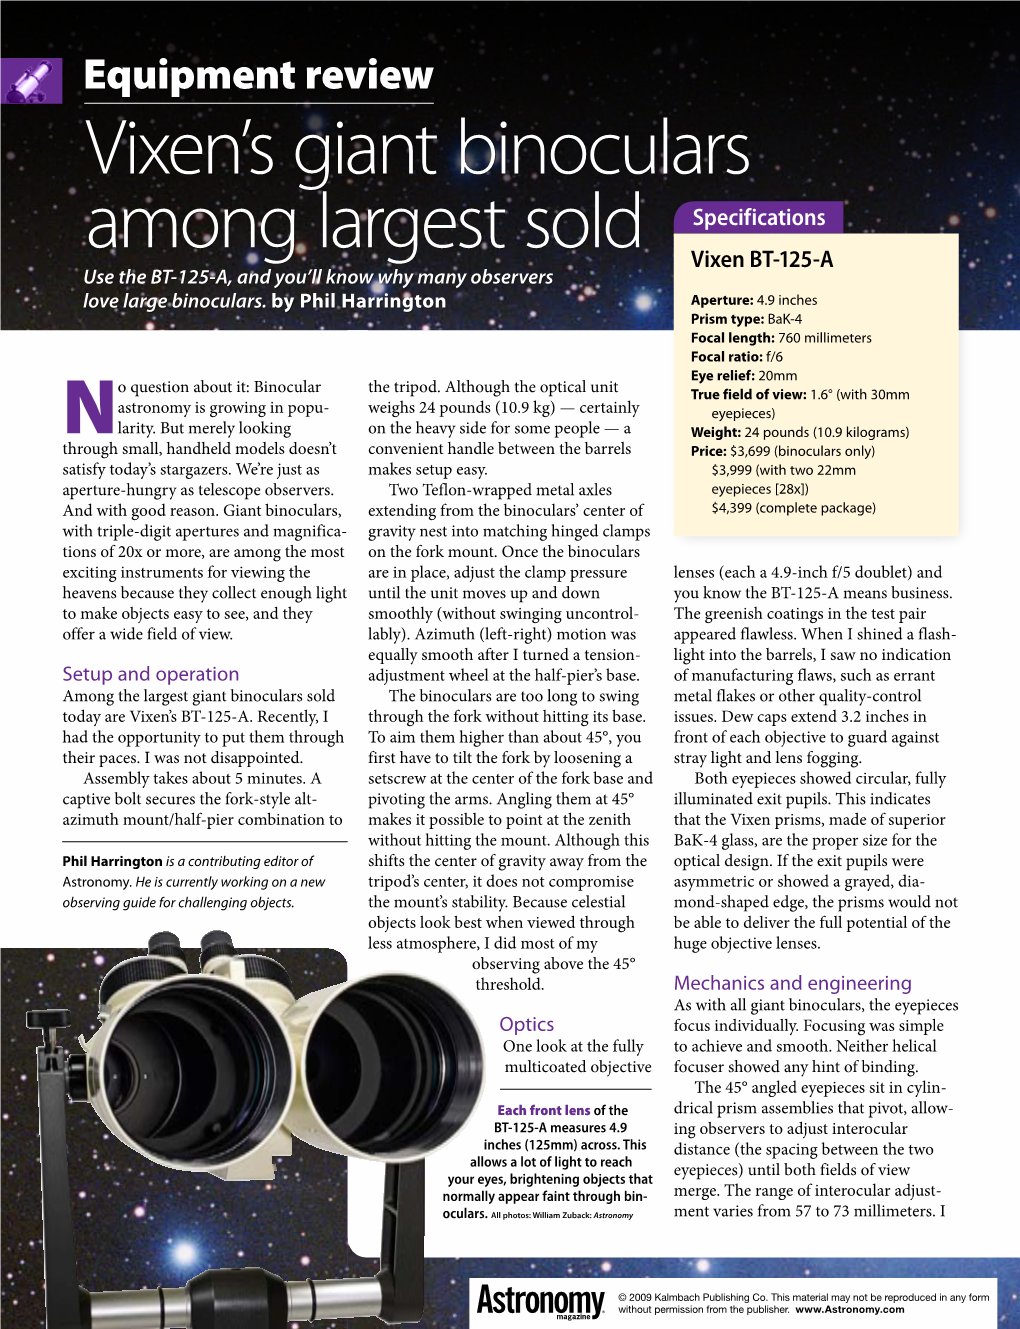 Vixen's Giant Binoculars Among Largest Sold